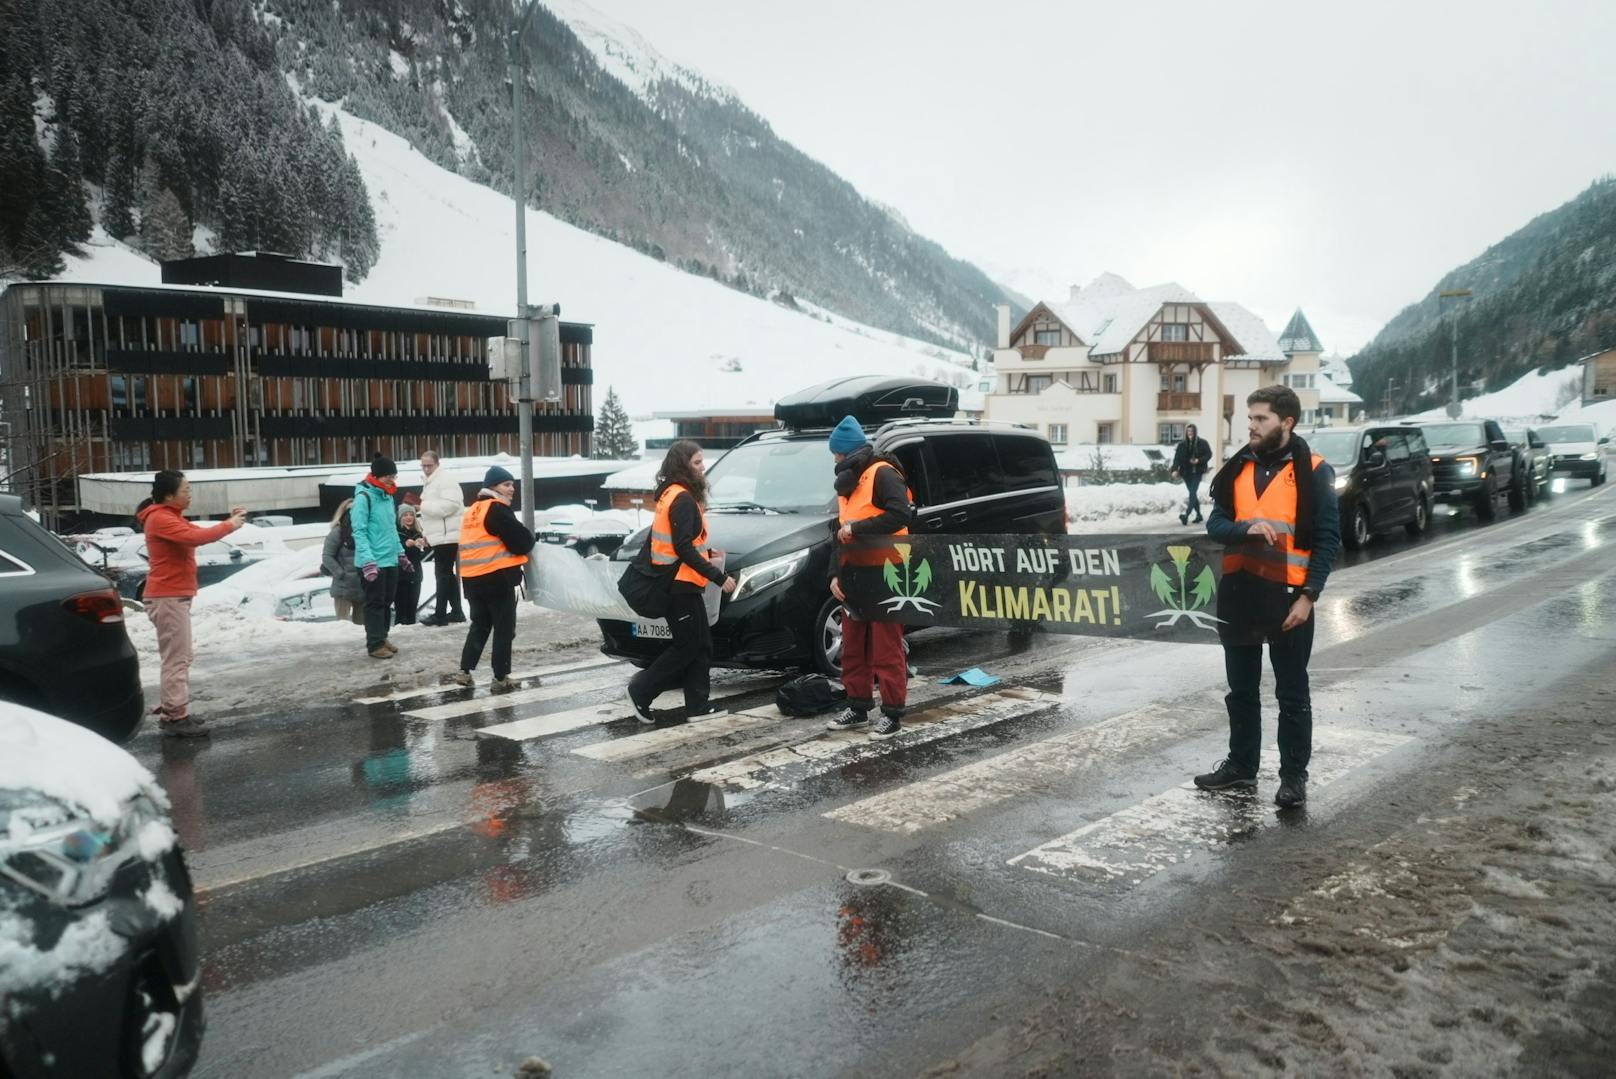 Am Donnerstagvormittag legte die Letzte Generation die Silvrettastraße zum Skigebiet Ischgl lahm.